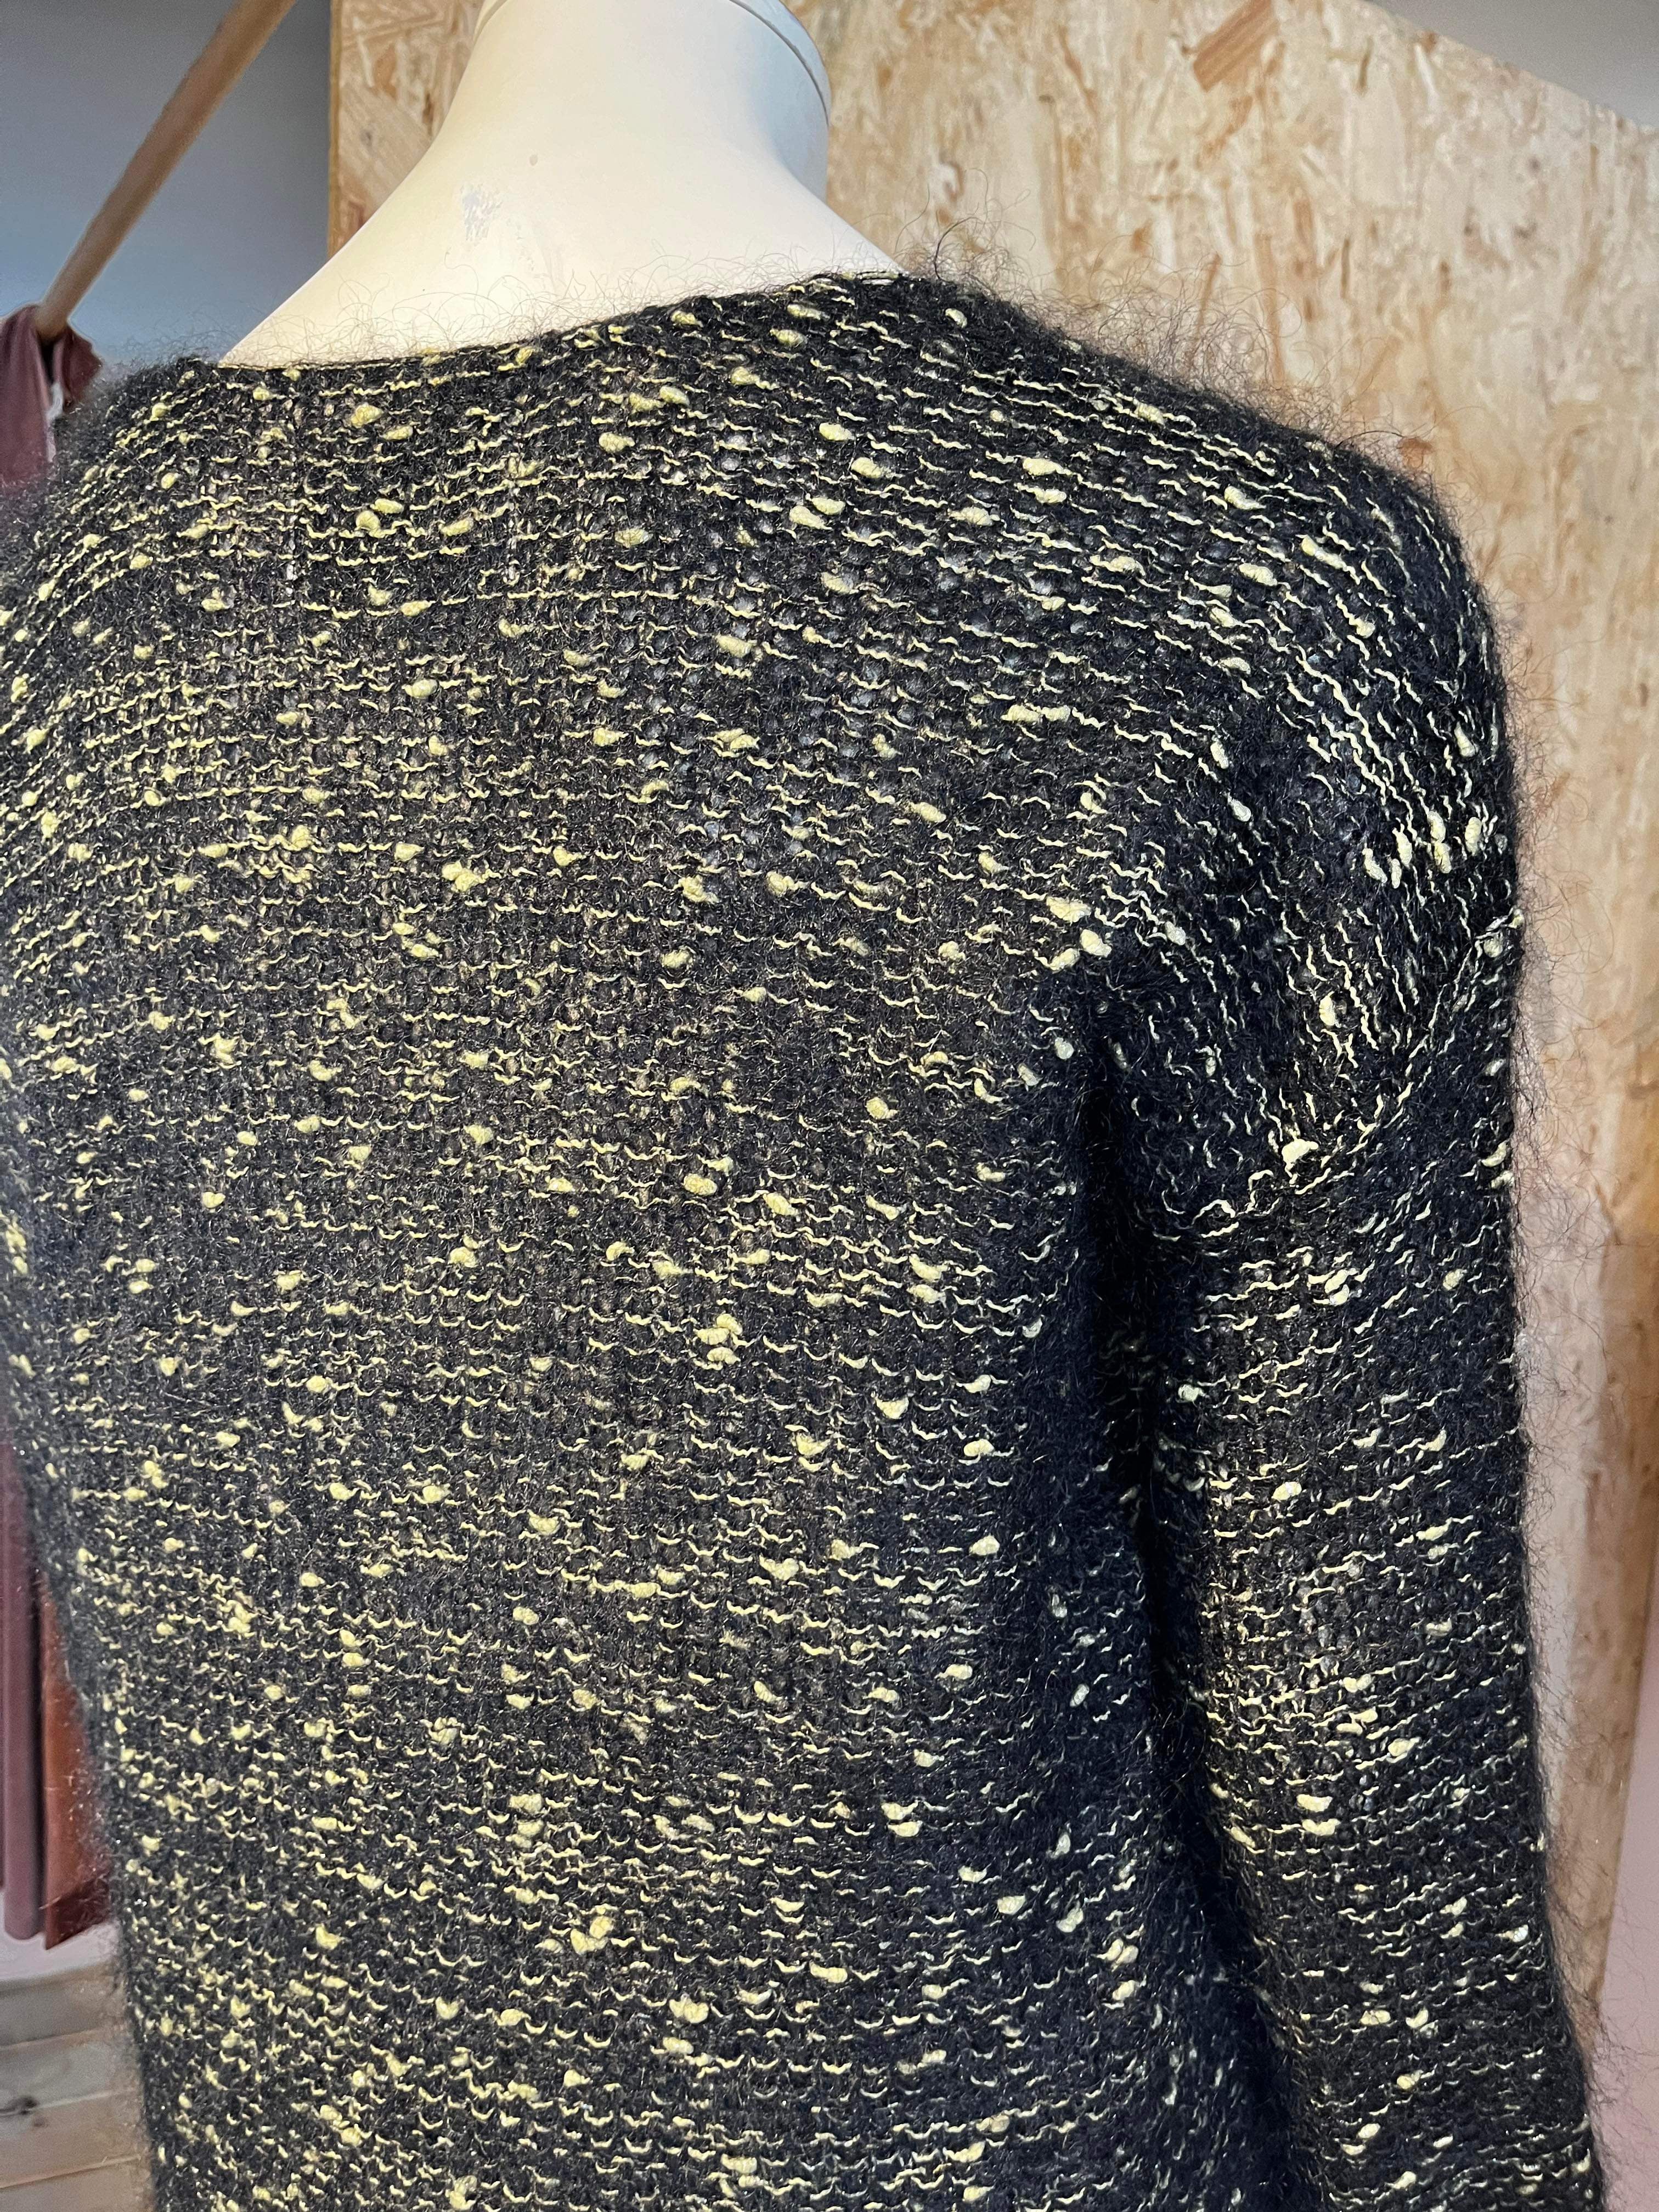 Day Birger et Mikkelsen - Sweater - Size: S